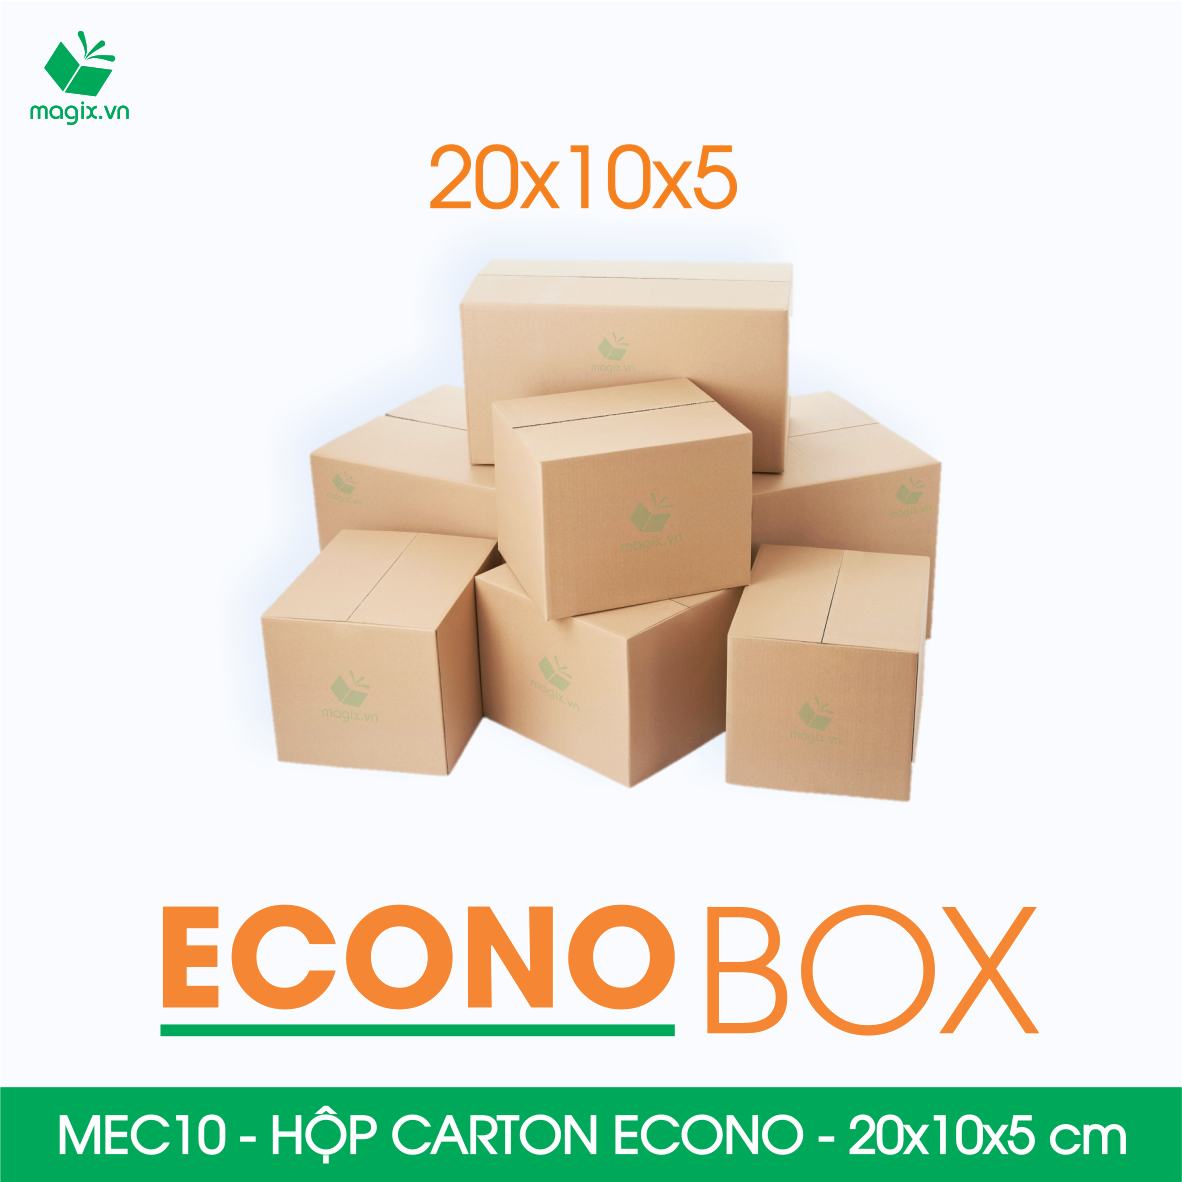 MEC10 - 20x10x5 cm - Combo 100 thùng hộp carton trơn siêu tiết kiệm ECONO